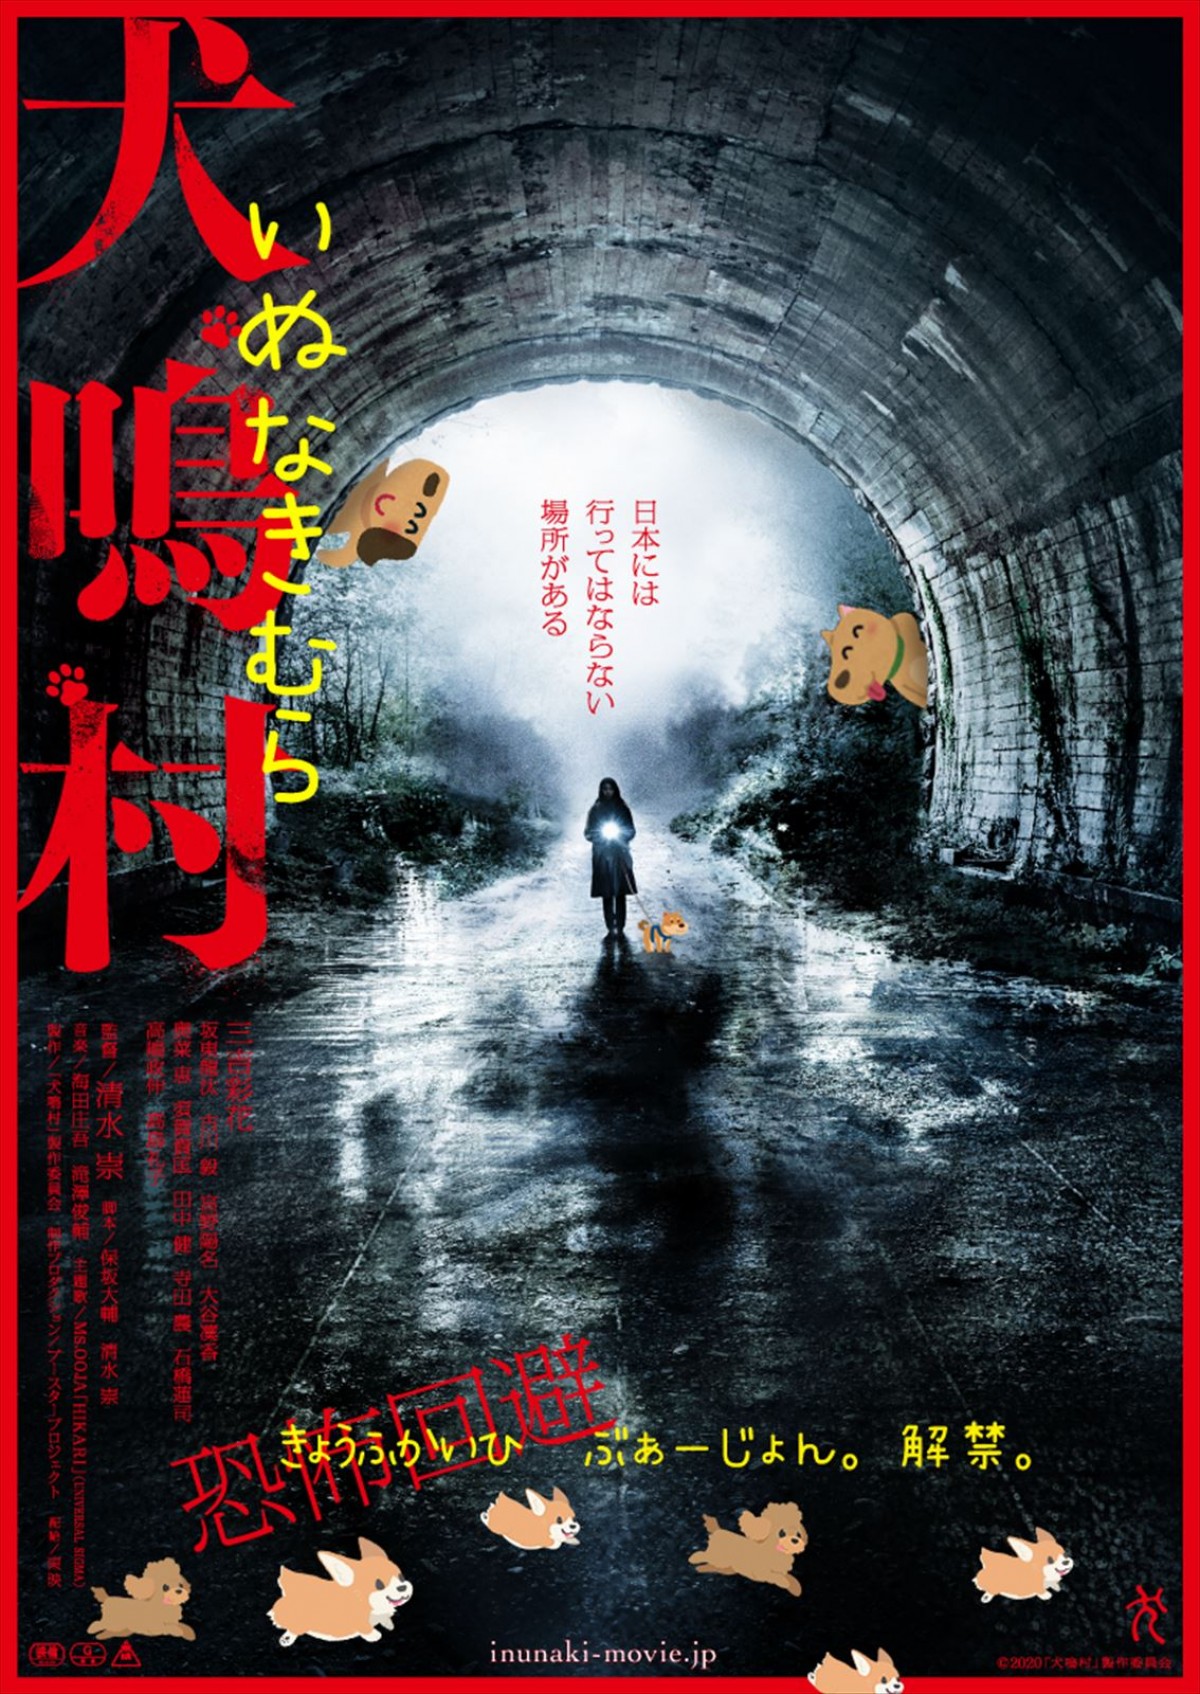 映画『犬鳴村』より「恐怖回避ばーじょん」ポスター